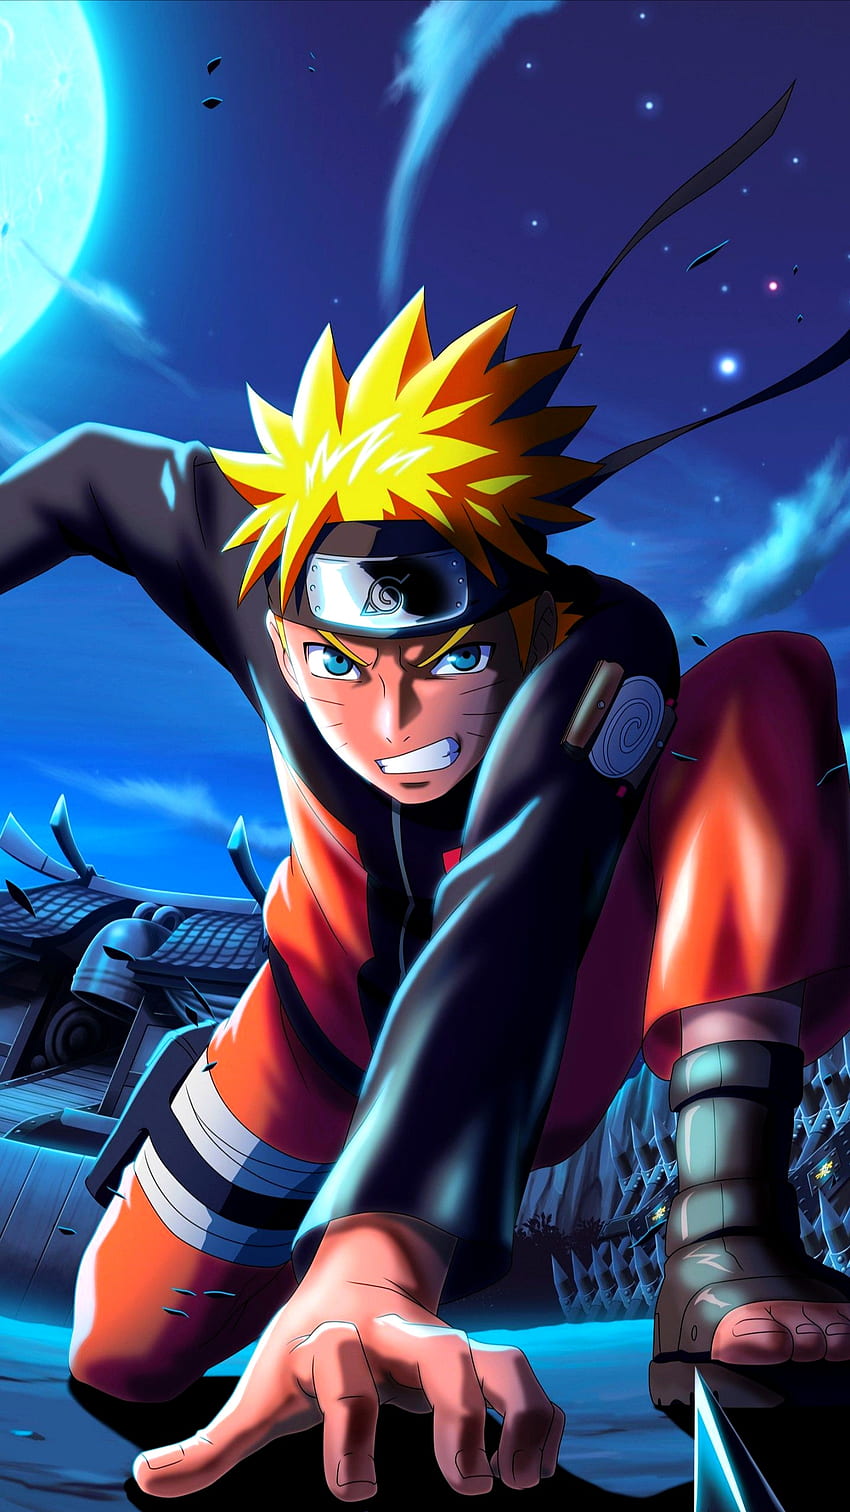 Uzumaki Naruto , Dattebayo - Cái tên này không còn xa lạ với fan hâm mộ anime, được biết đến với kỉ lục chiến thắng và sức mạnh phi thường. Hãy xem ảnh liên quan để khám phá sự mạnh mẽ và đẳng cấp của Naruto!